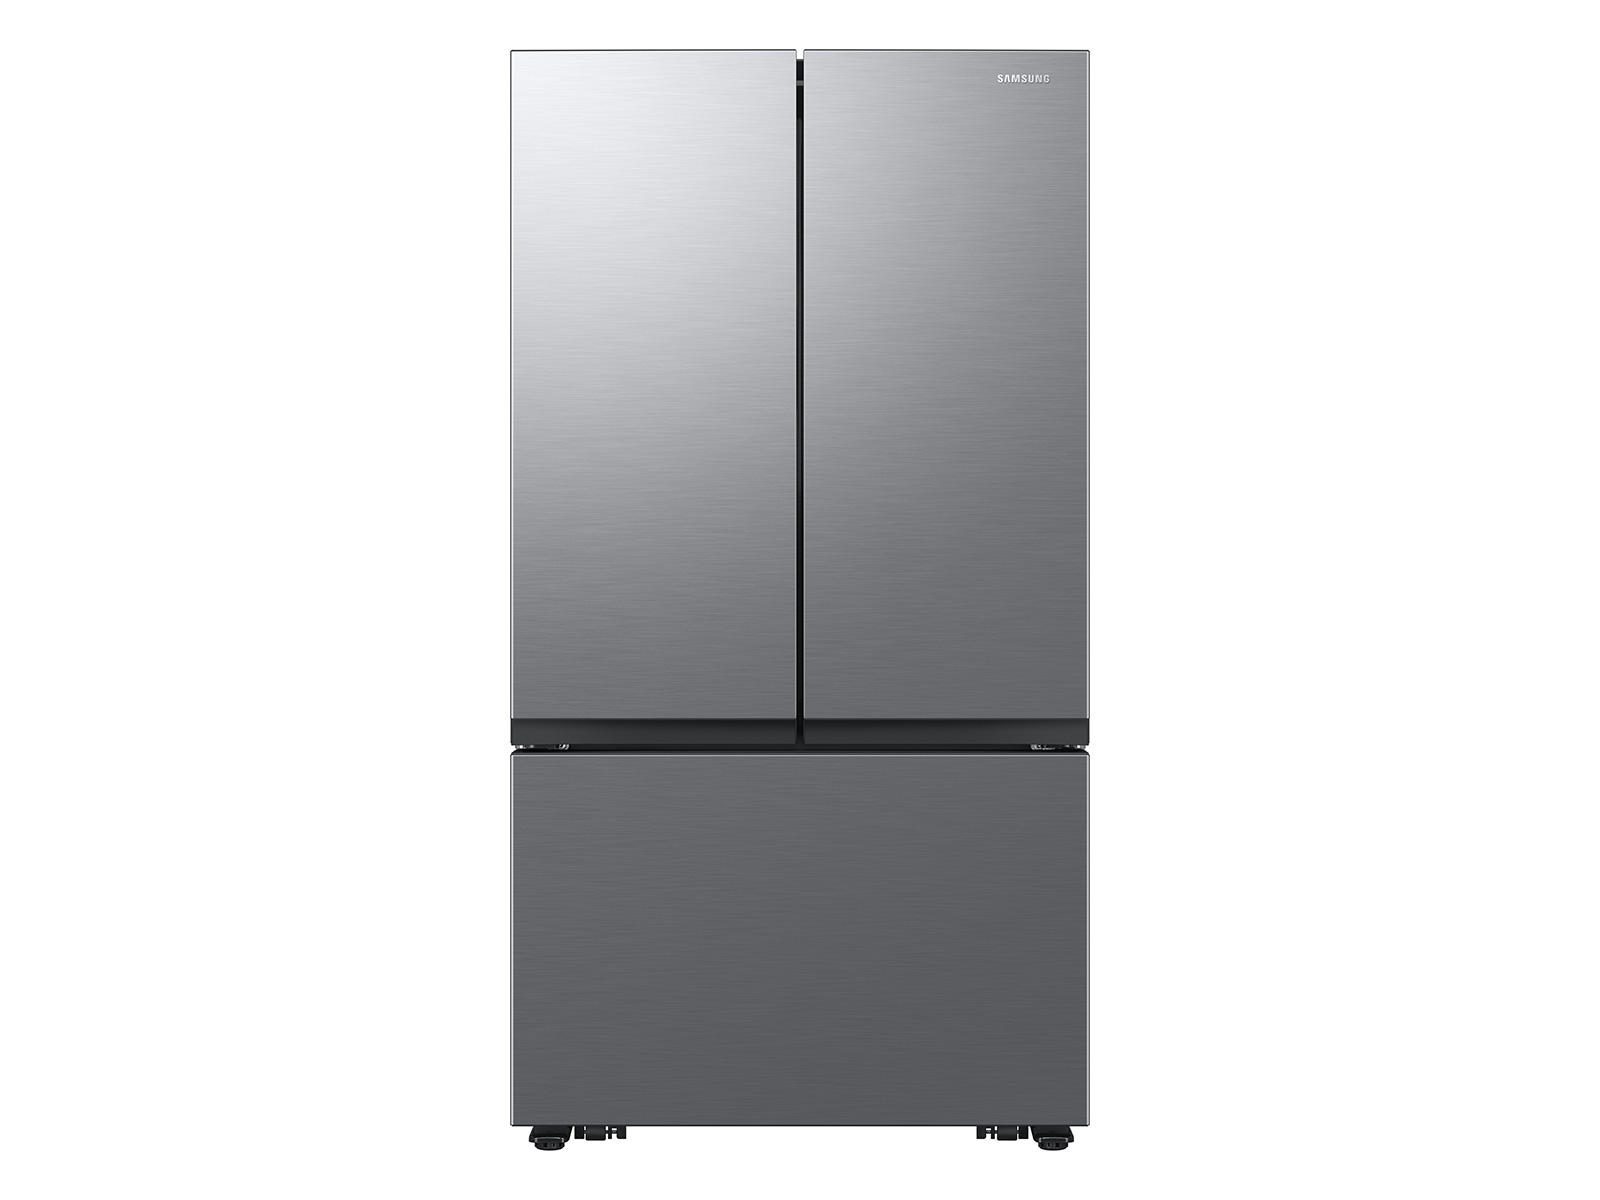 Photos - Fridge Samsung 27 cu. ft. Counter Depth Mega Capacity 3-Door French Door Refriger 